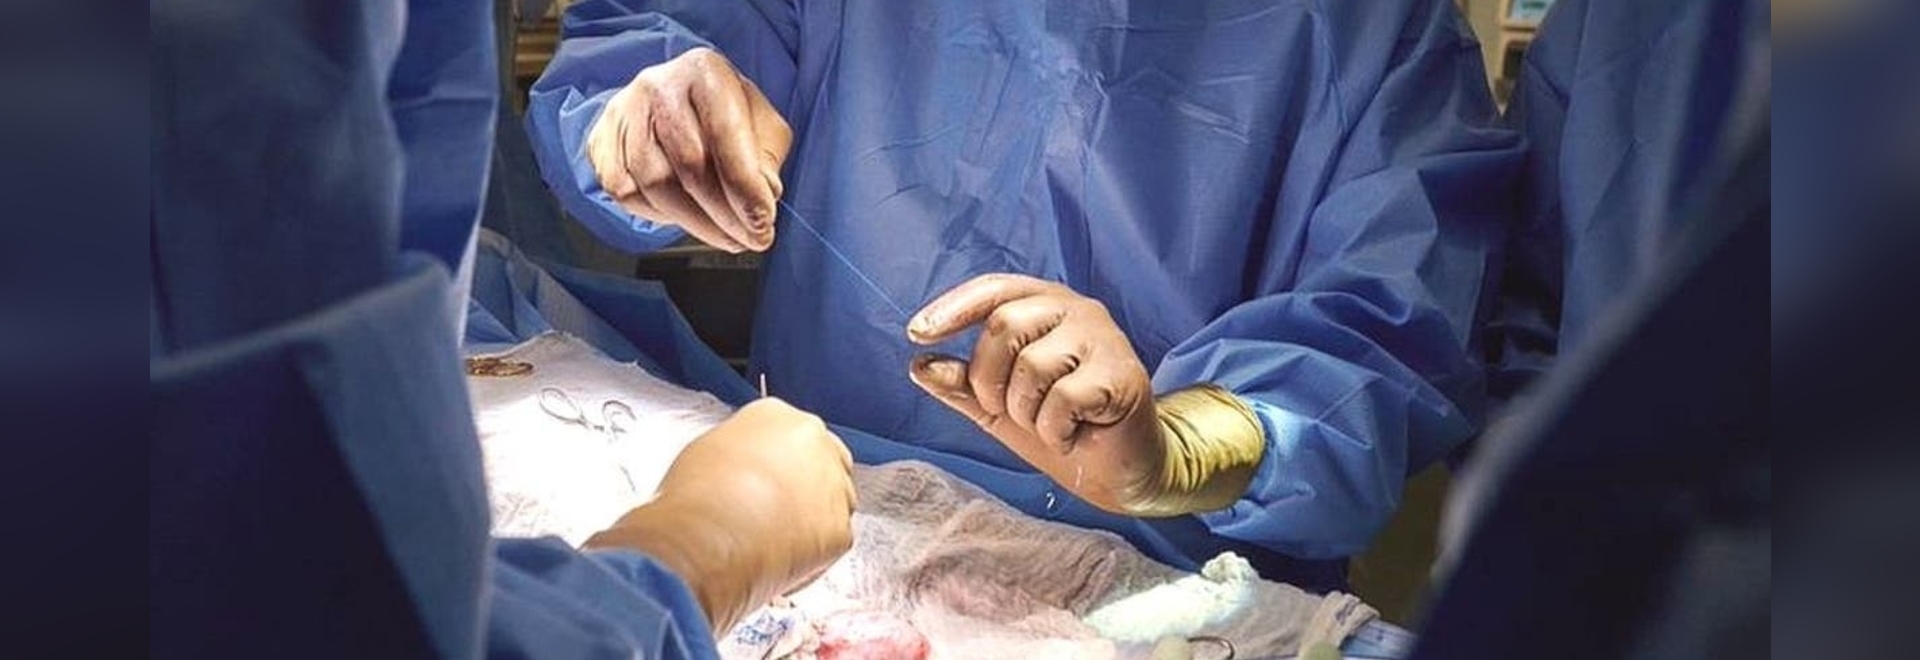 جراحان آمریکایی پیوند کلیه خوک را روی انسان آزمایش کردند